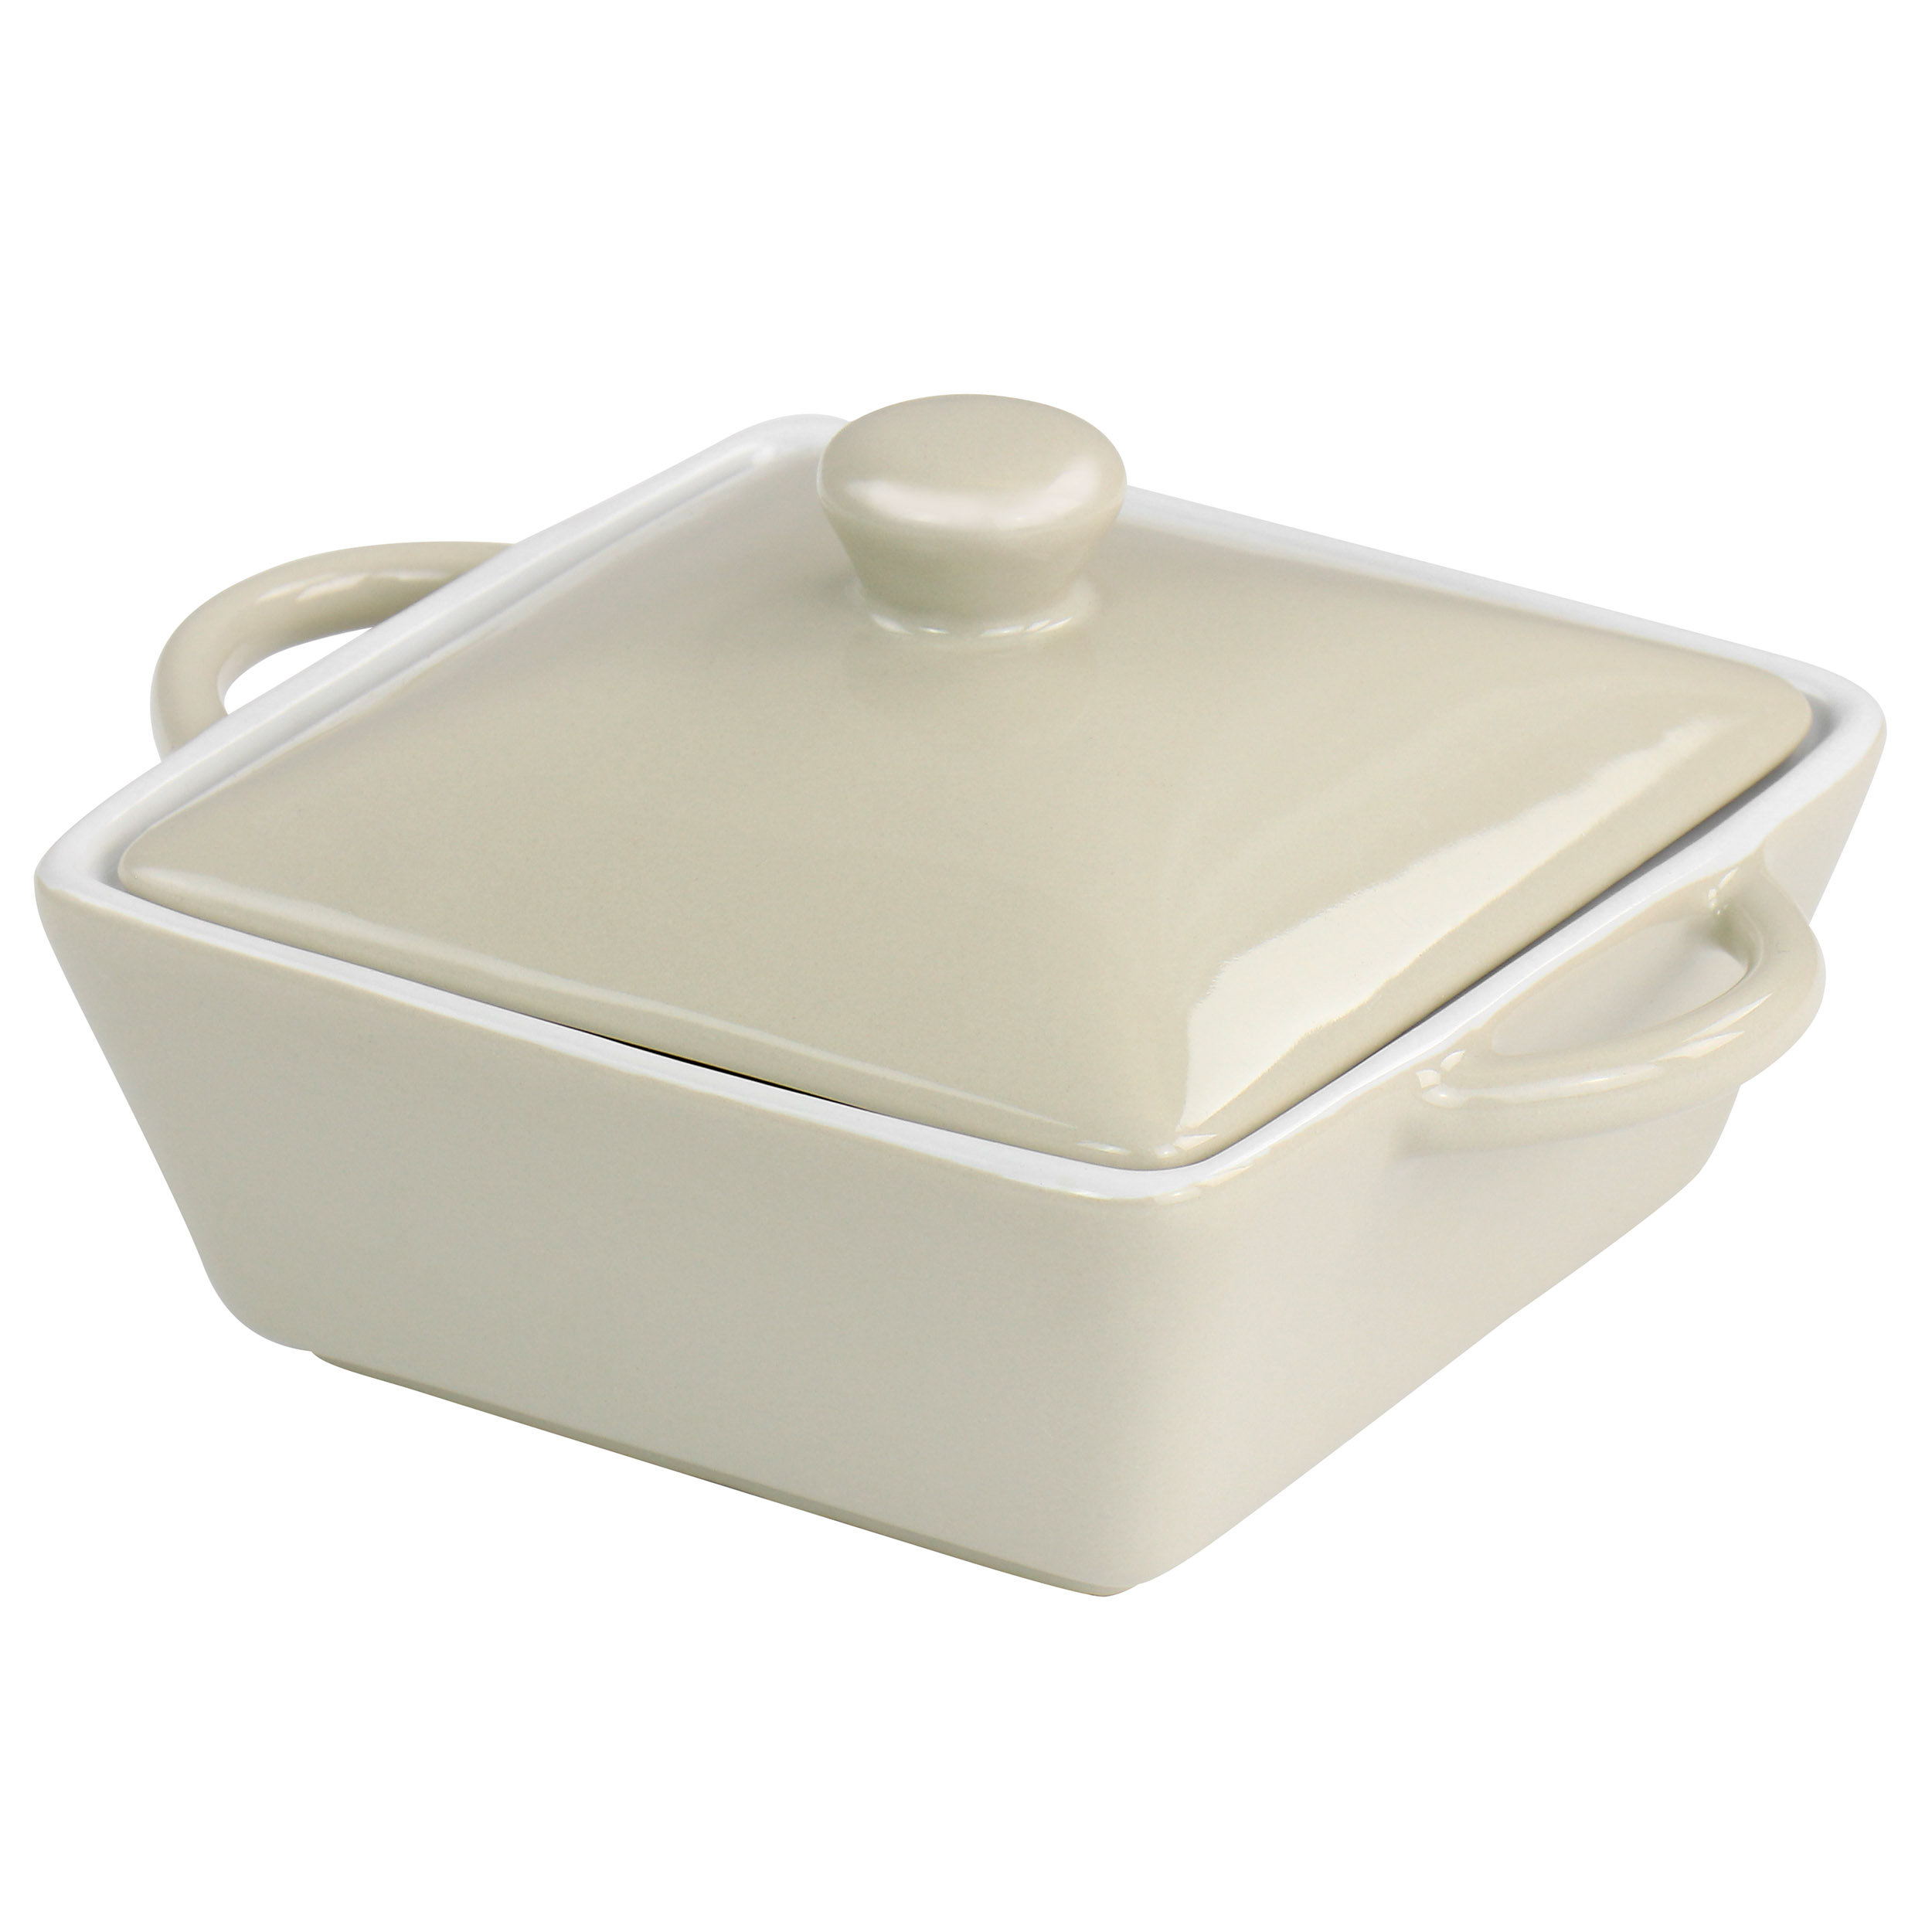 https://assets.wfcdn.com/im/17359291/compr-r85/2188/218850885/martha-stewart-mini-stoneware-casserole-with-lid-in-beige.jpg